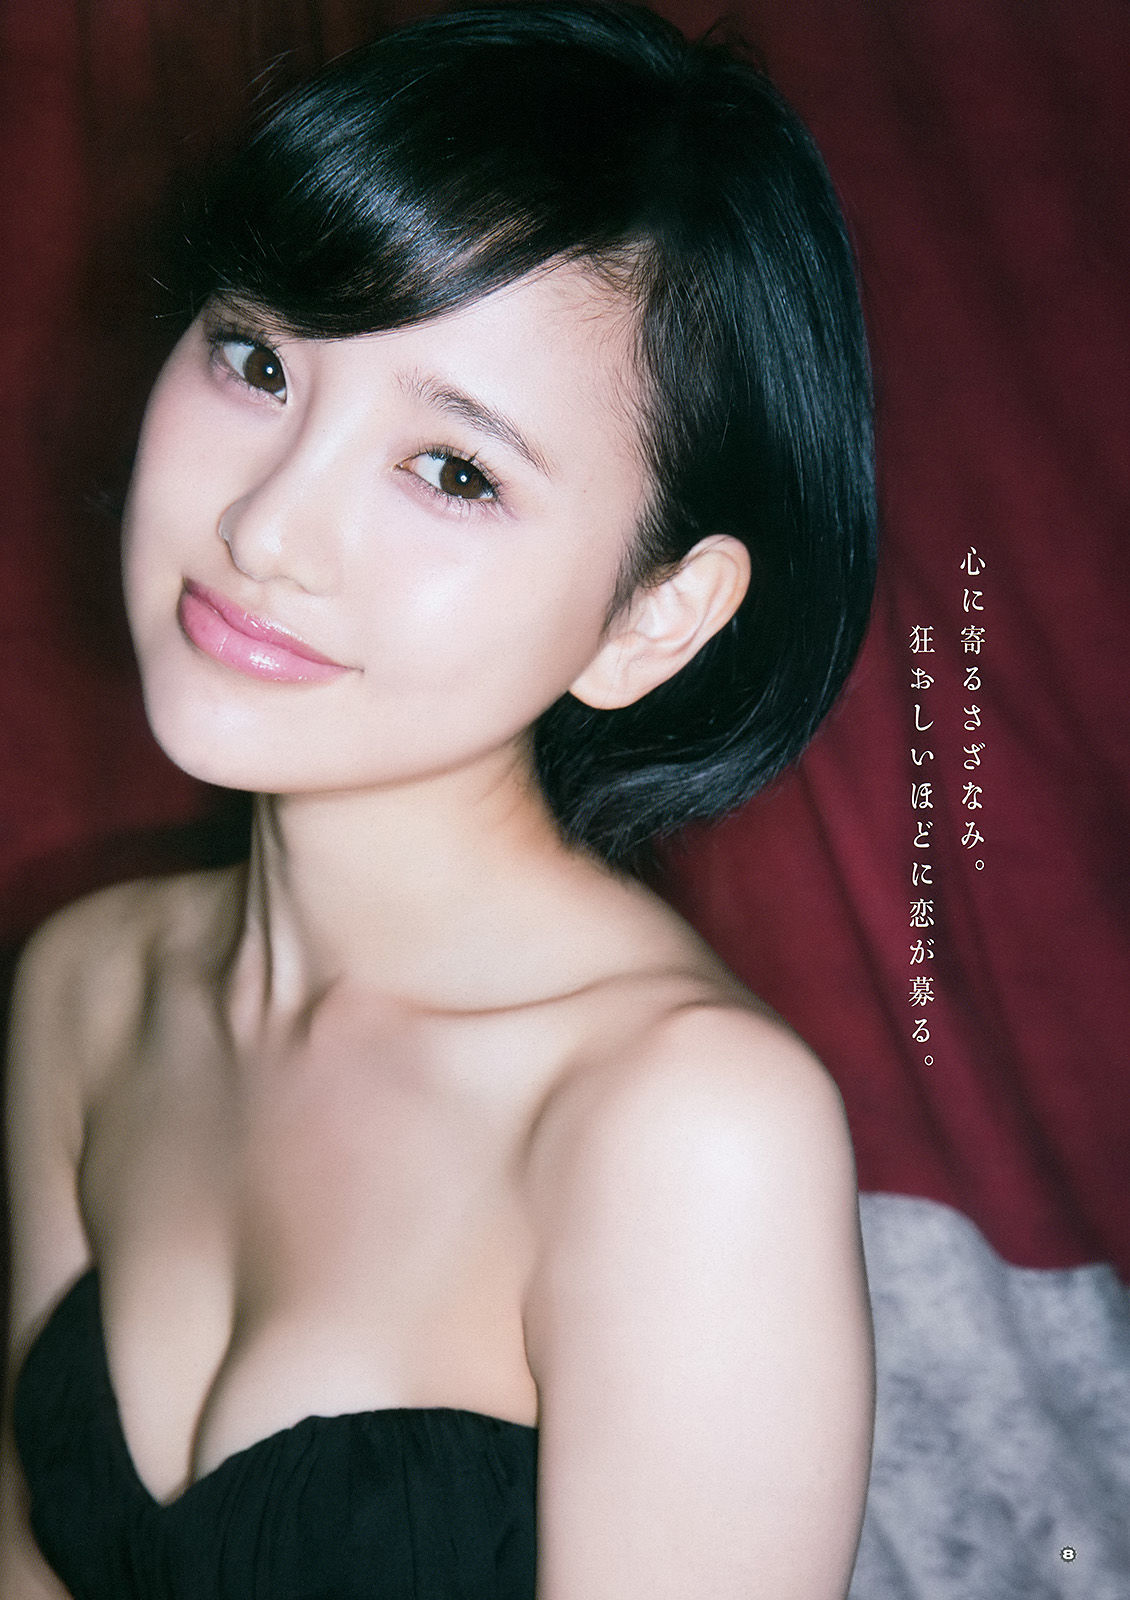 [Young Gangan] Haruka Kodama Rion 2015 No.23 Photo Magazine Page 7 No.b37b3f